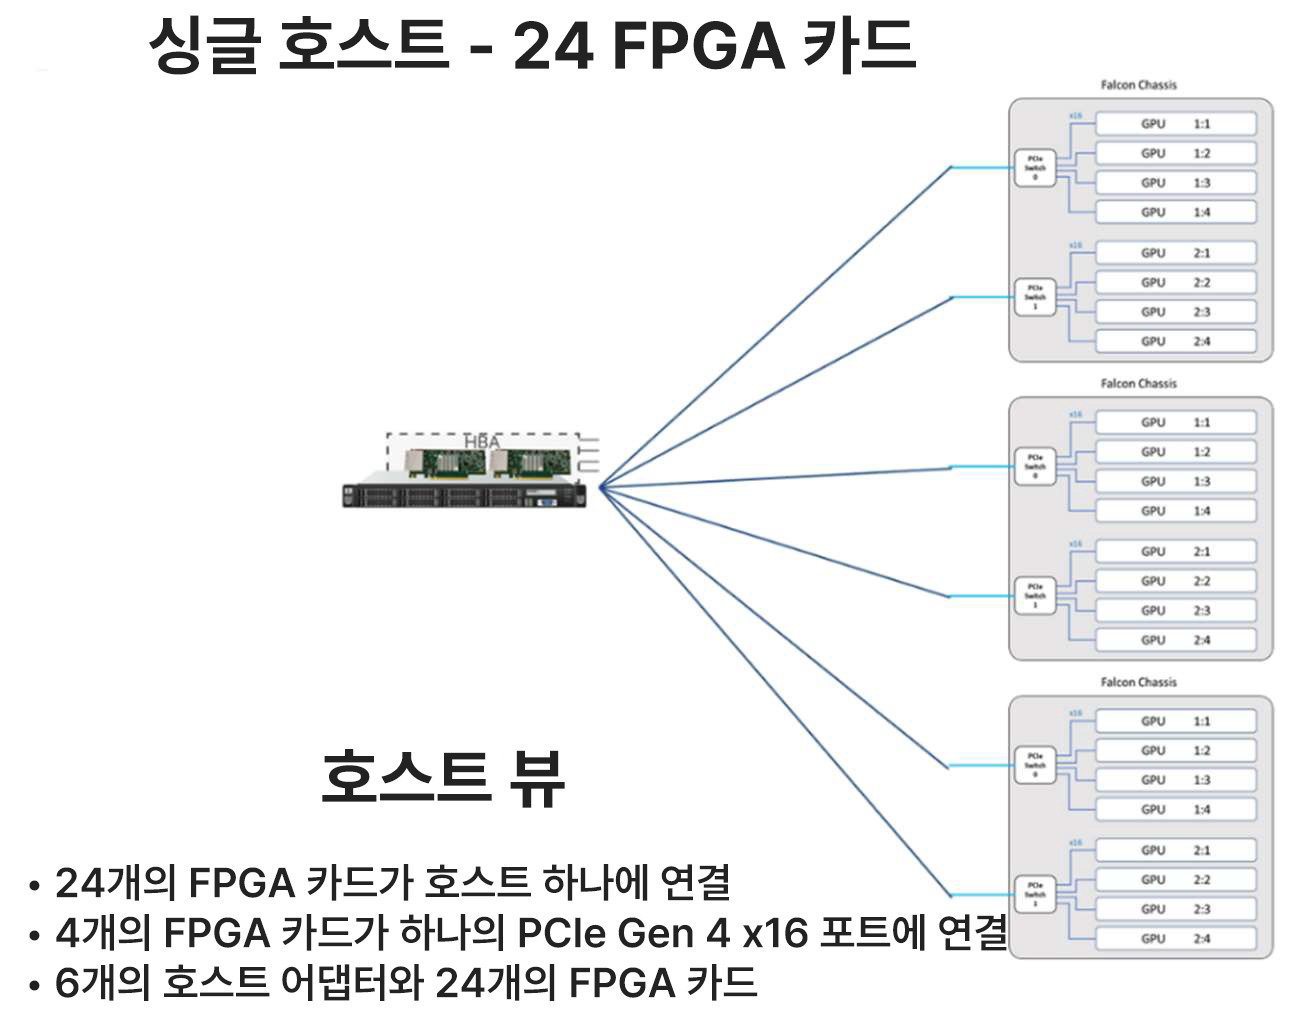 3개의 Falcon 4210을 활용하여 하나의 CPU 호스트에 24개의 FPGA를 연결